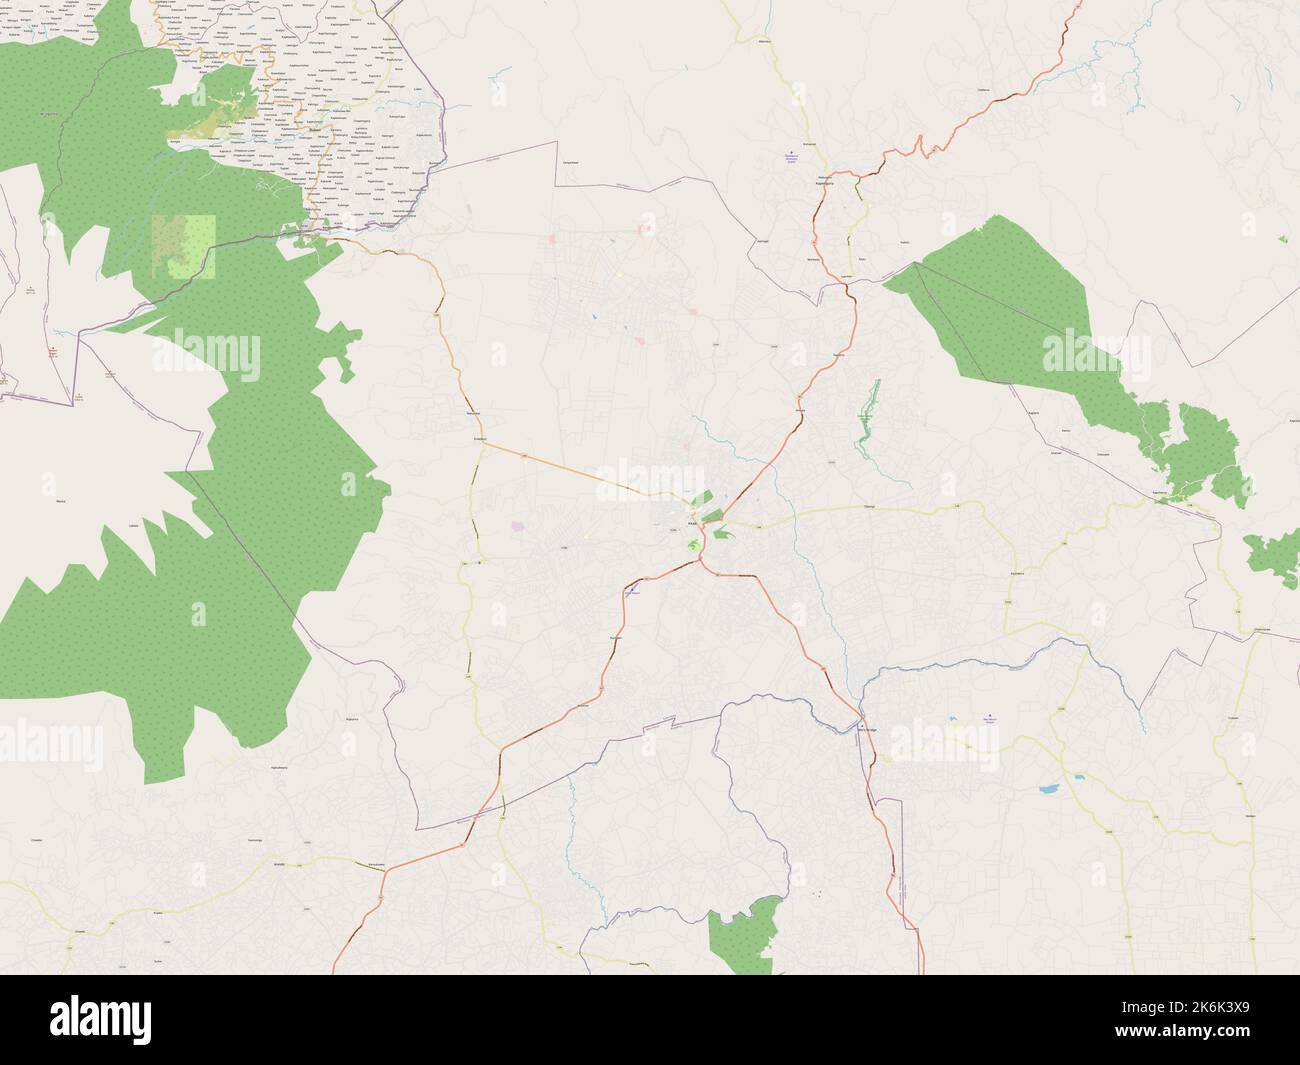 Trans Nzoia, county of Kenya. Open Street Map Stock Photo